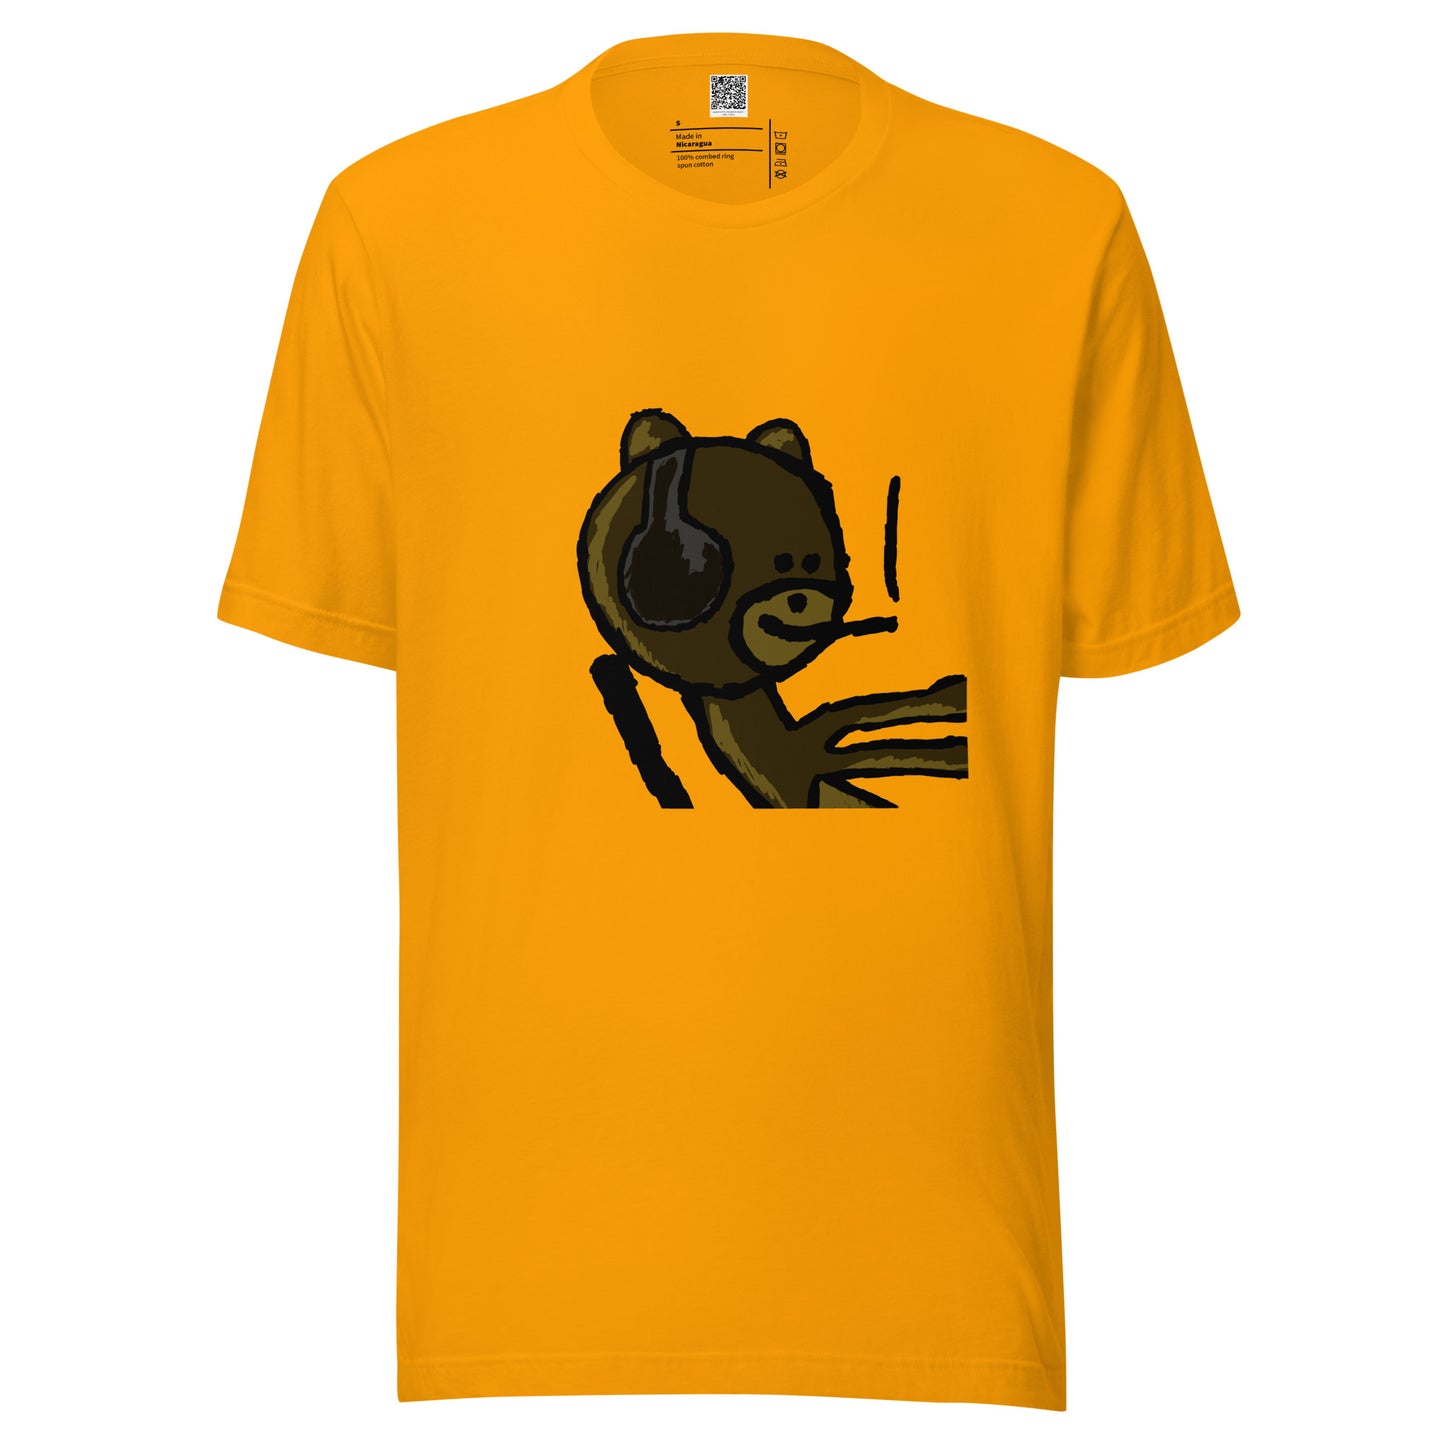 Unisex t-shirt - bear mfer